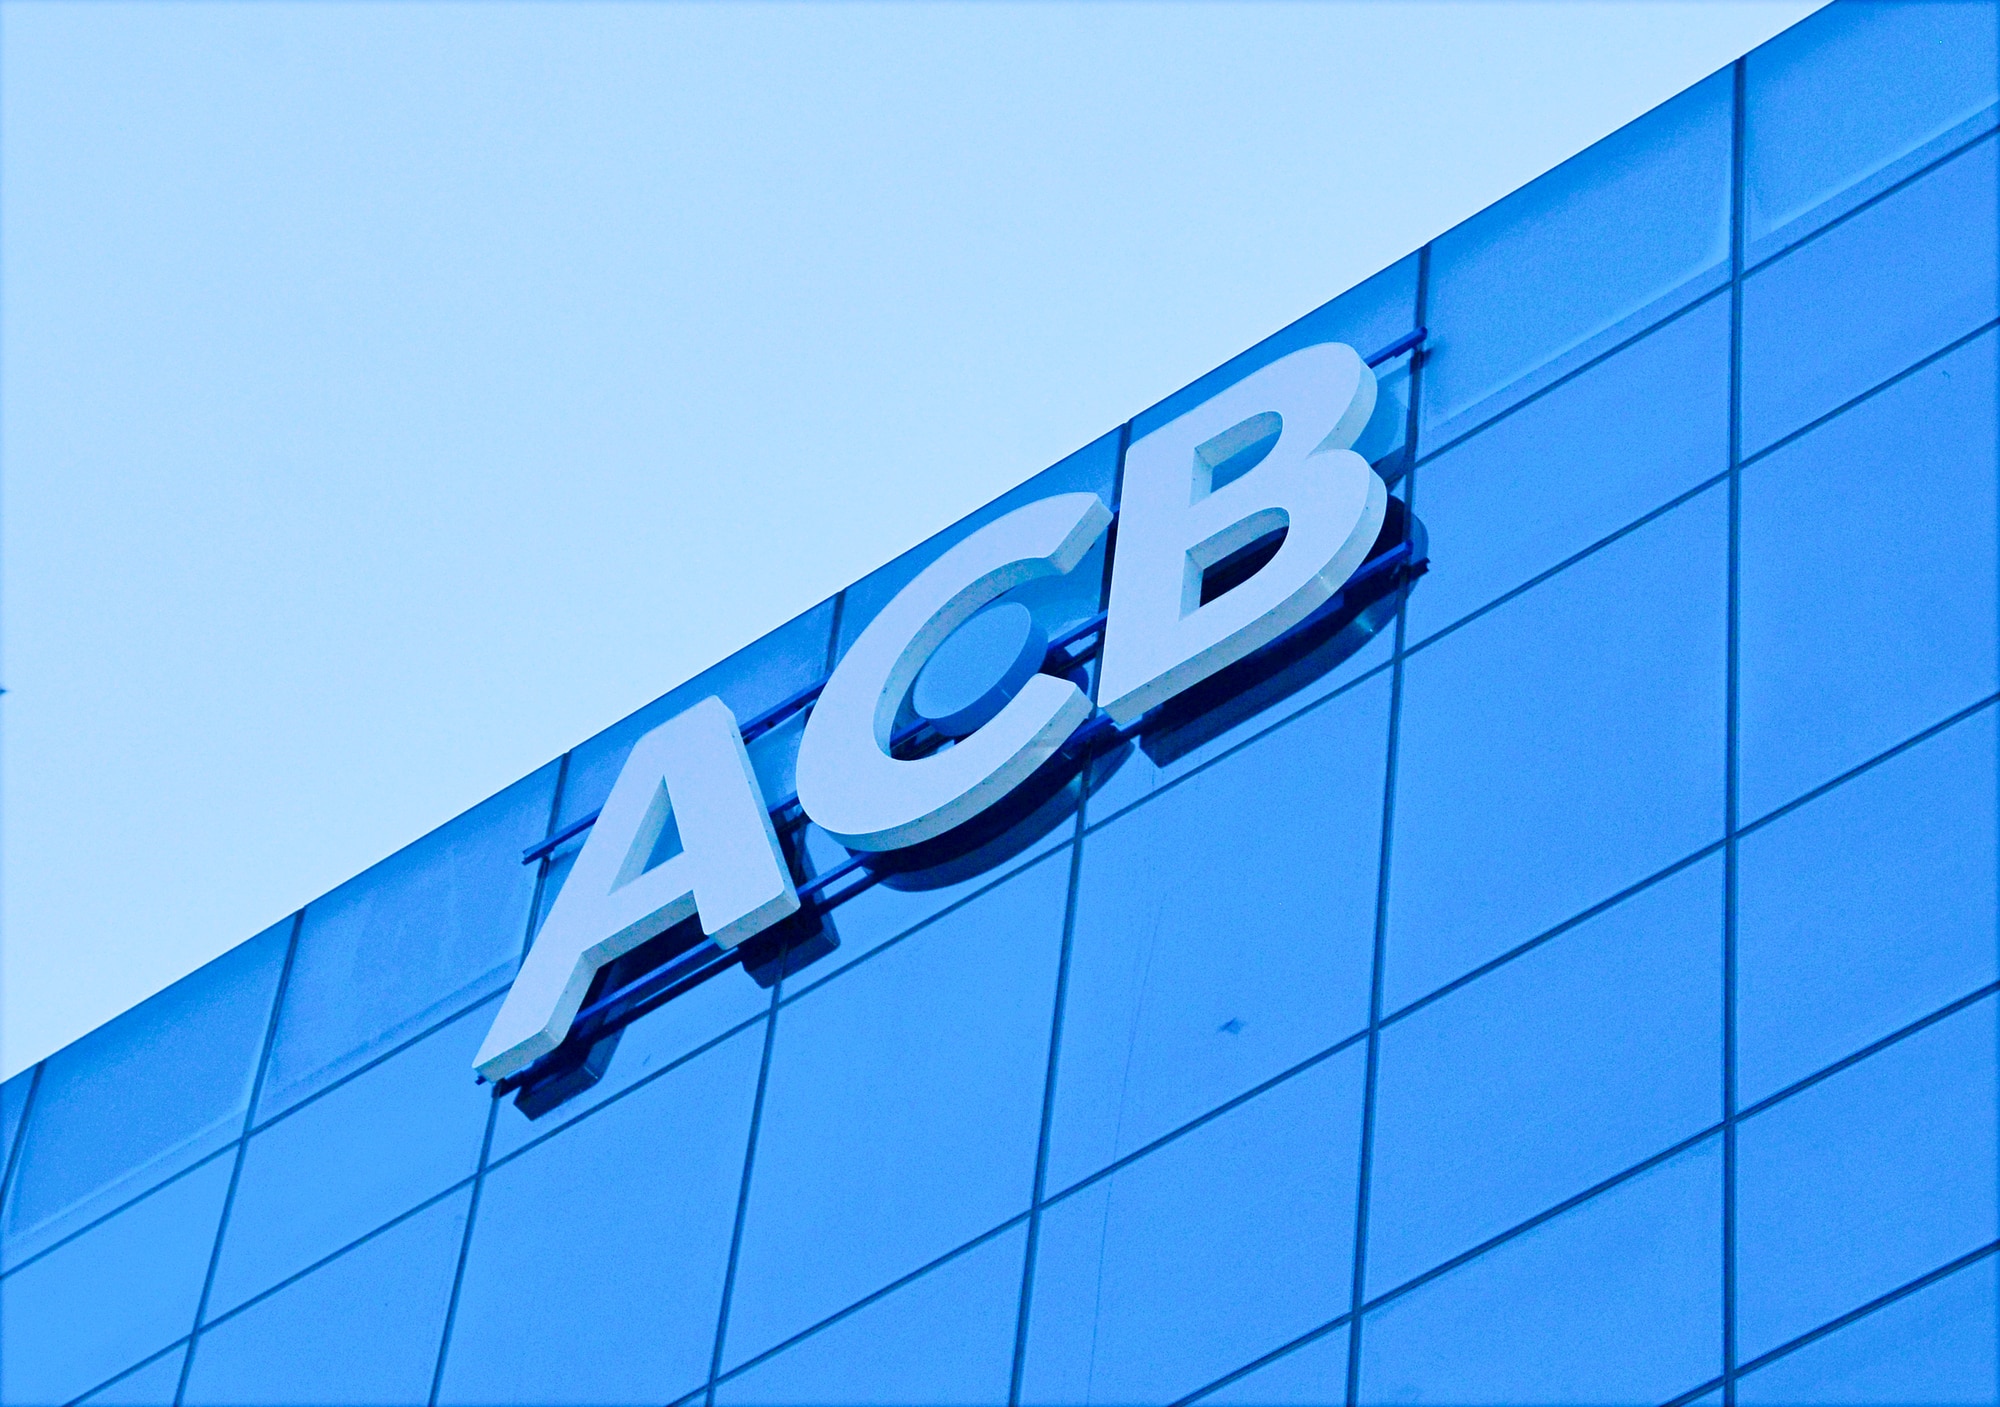 ACB hướng đến mục tiêu ngân hàng có mô hình quản trị rủi ro tốt nhất - Ảnh 1.